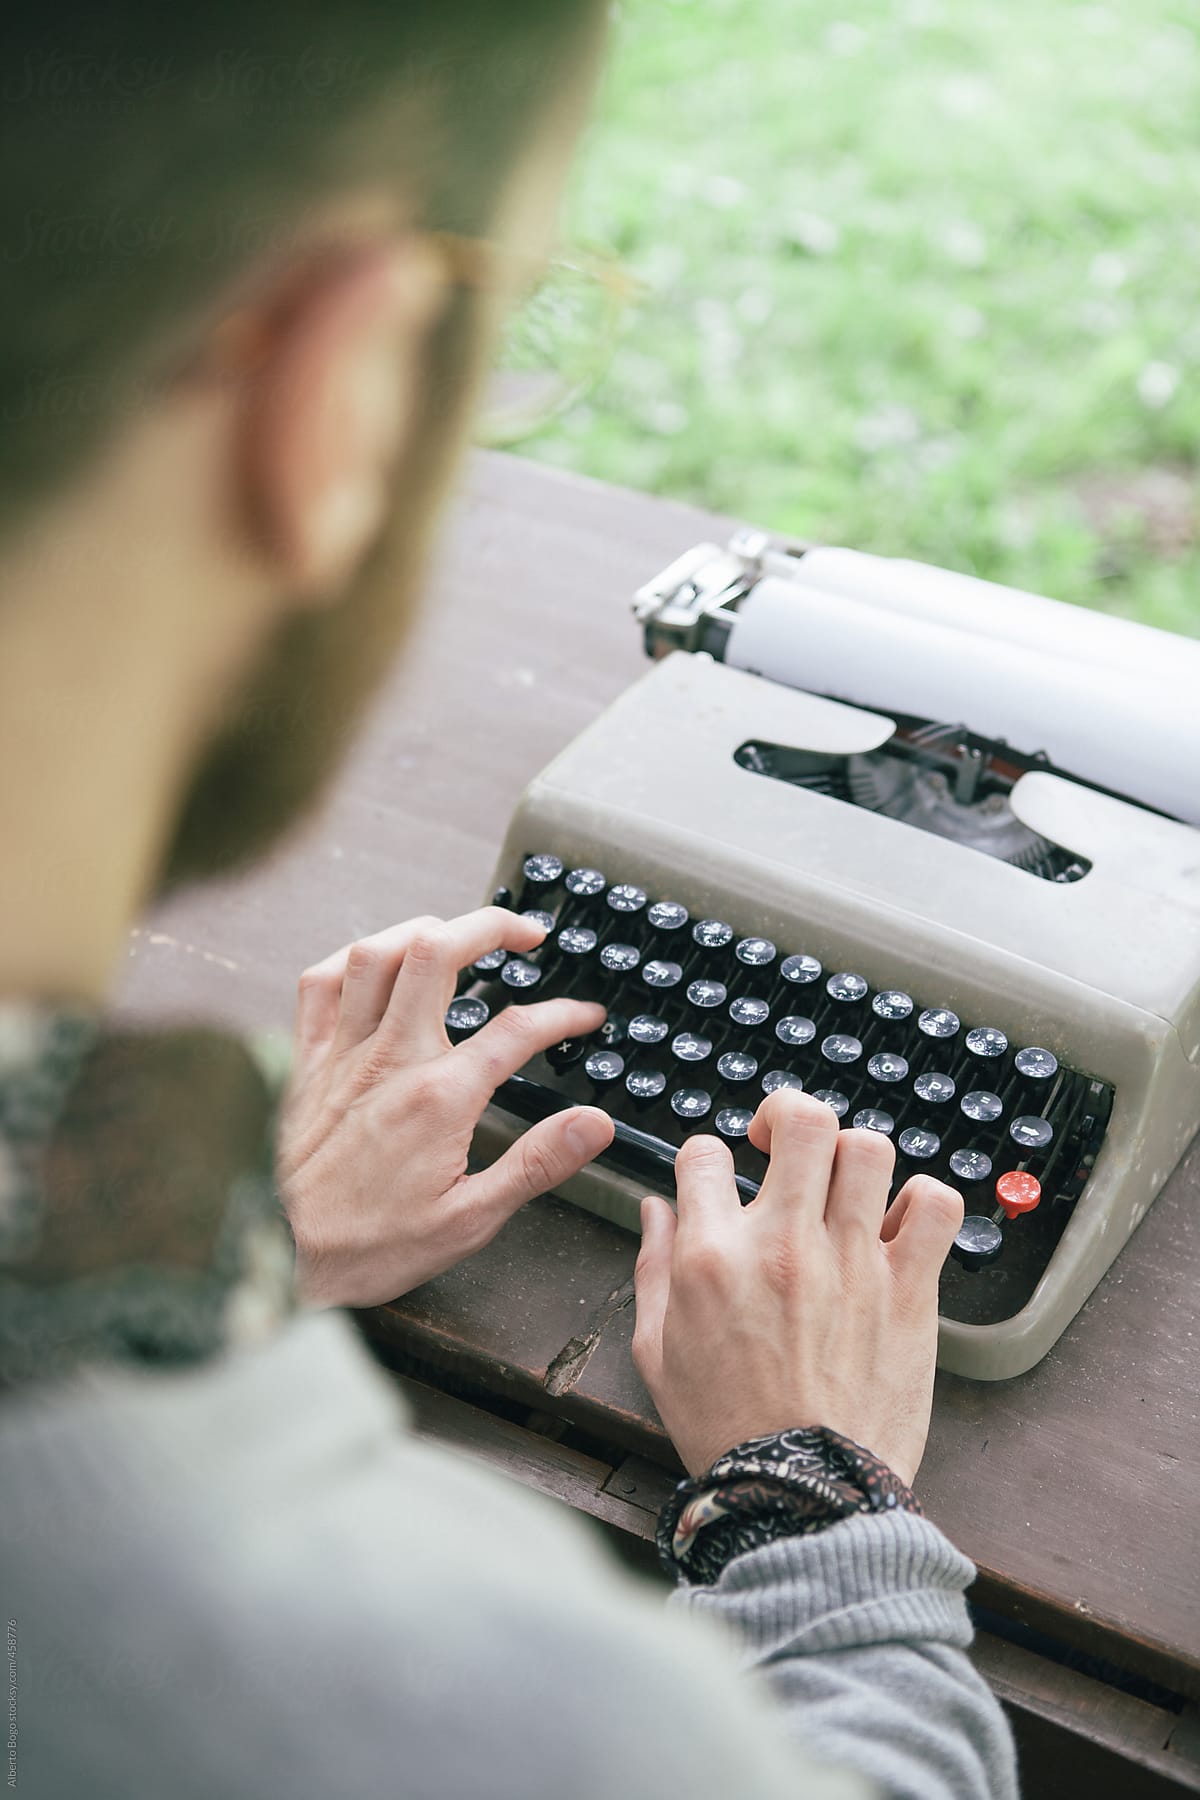 Man working on a typewriter in the garden